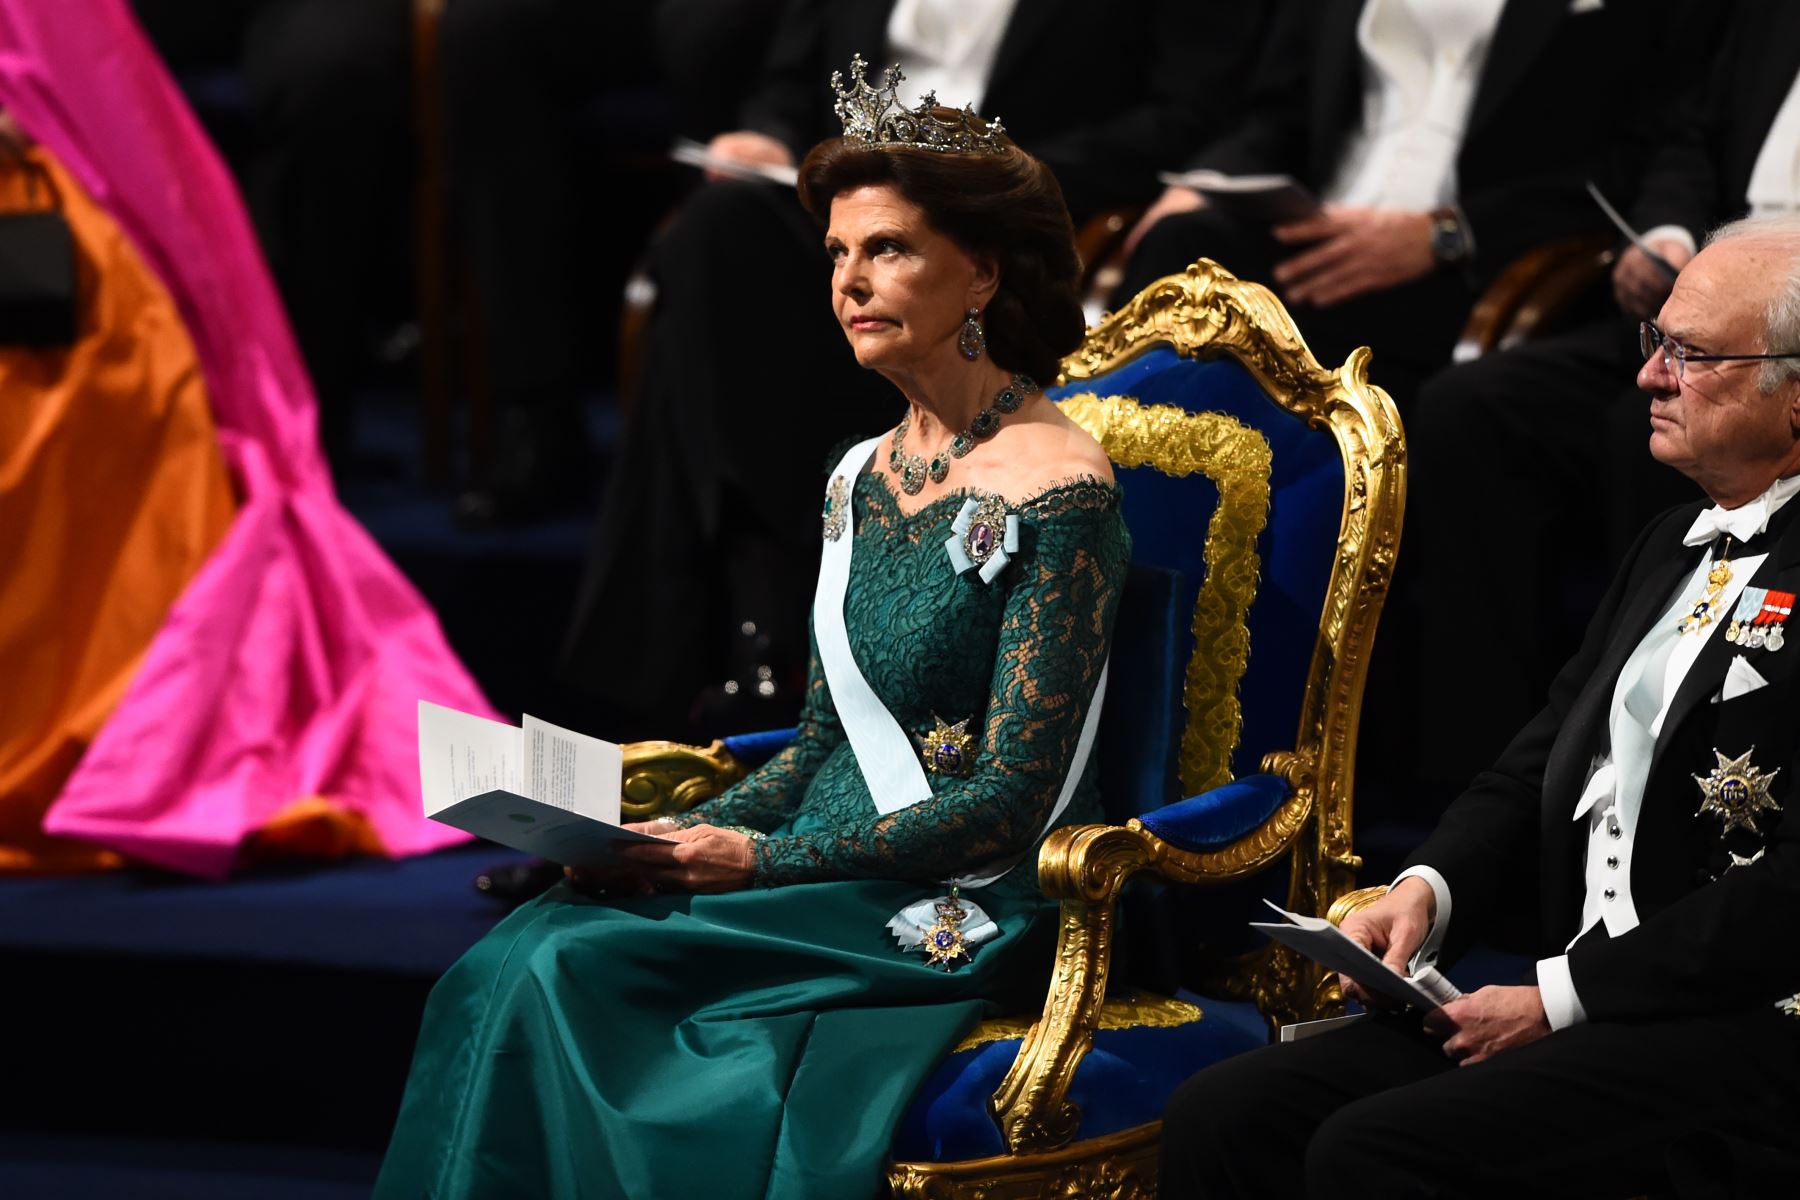 La reina Silvia de Suecia asiste a la ceremonia de entrega del Premio Nobel 2018 el 10 de diciembre de 2018 en la Sala de Conciertos de Estocolmo, Suecia. AFP